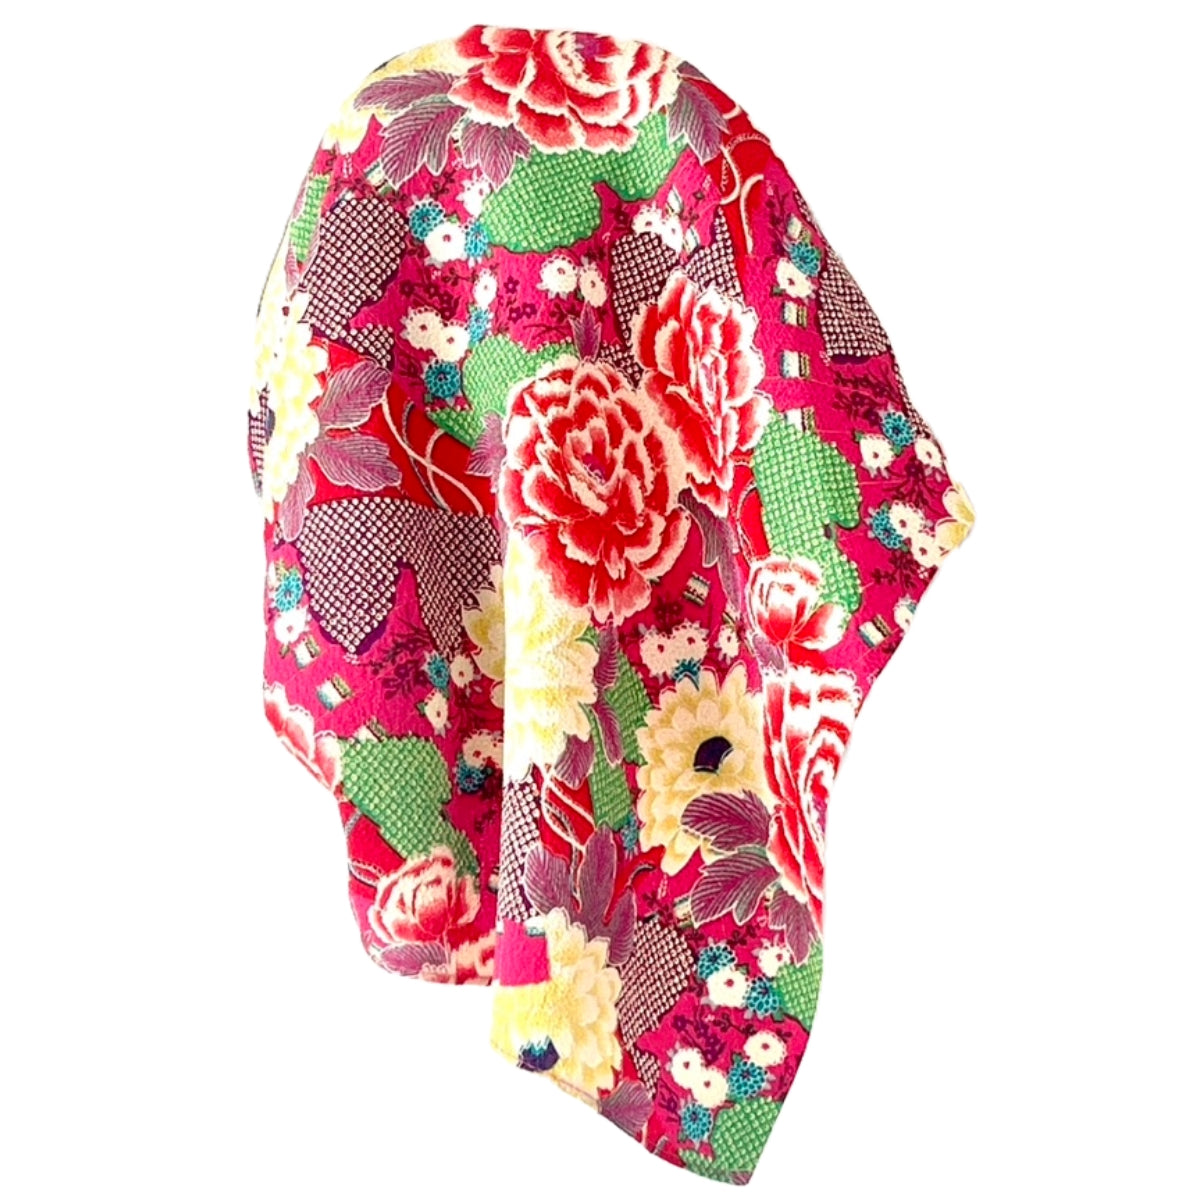 TØRKLÆDE OUTLET-  Japansk tørklæde i Kimonostof - Pink m. grønne, gule røde nuancer I grønlykke.com